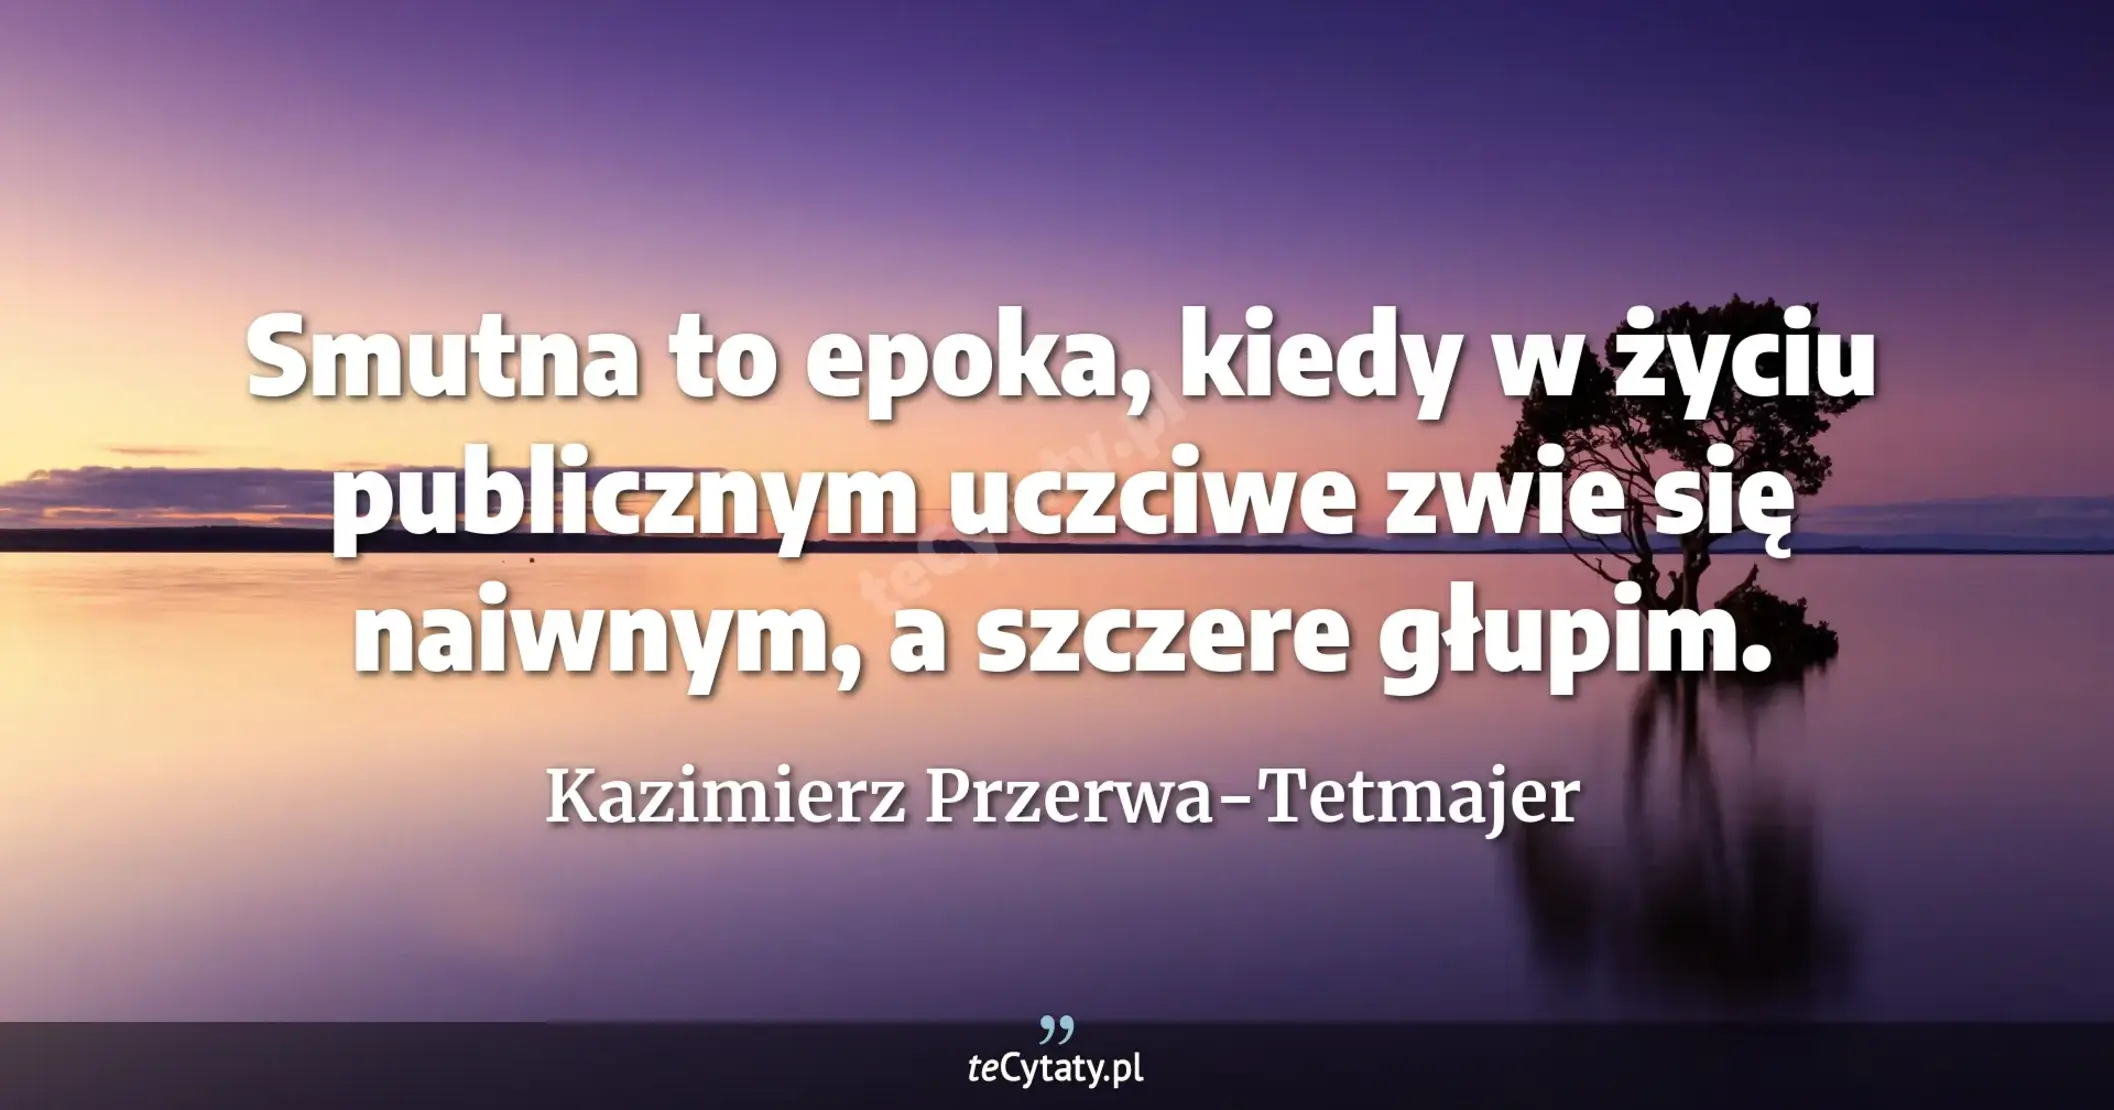 Smutna to epoka, kiedy w życiu publicznym uczciwe zwie się naiwnym, a szczere głupim. - Kazimierz Przerwa-Tetmajer